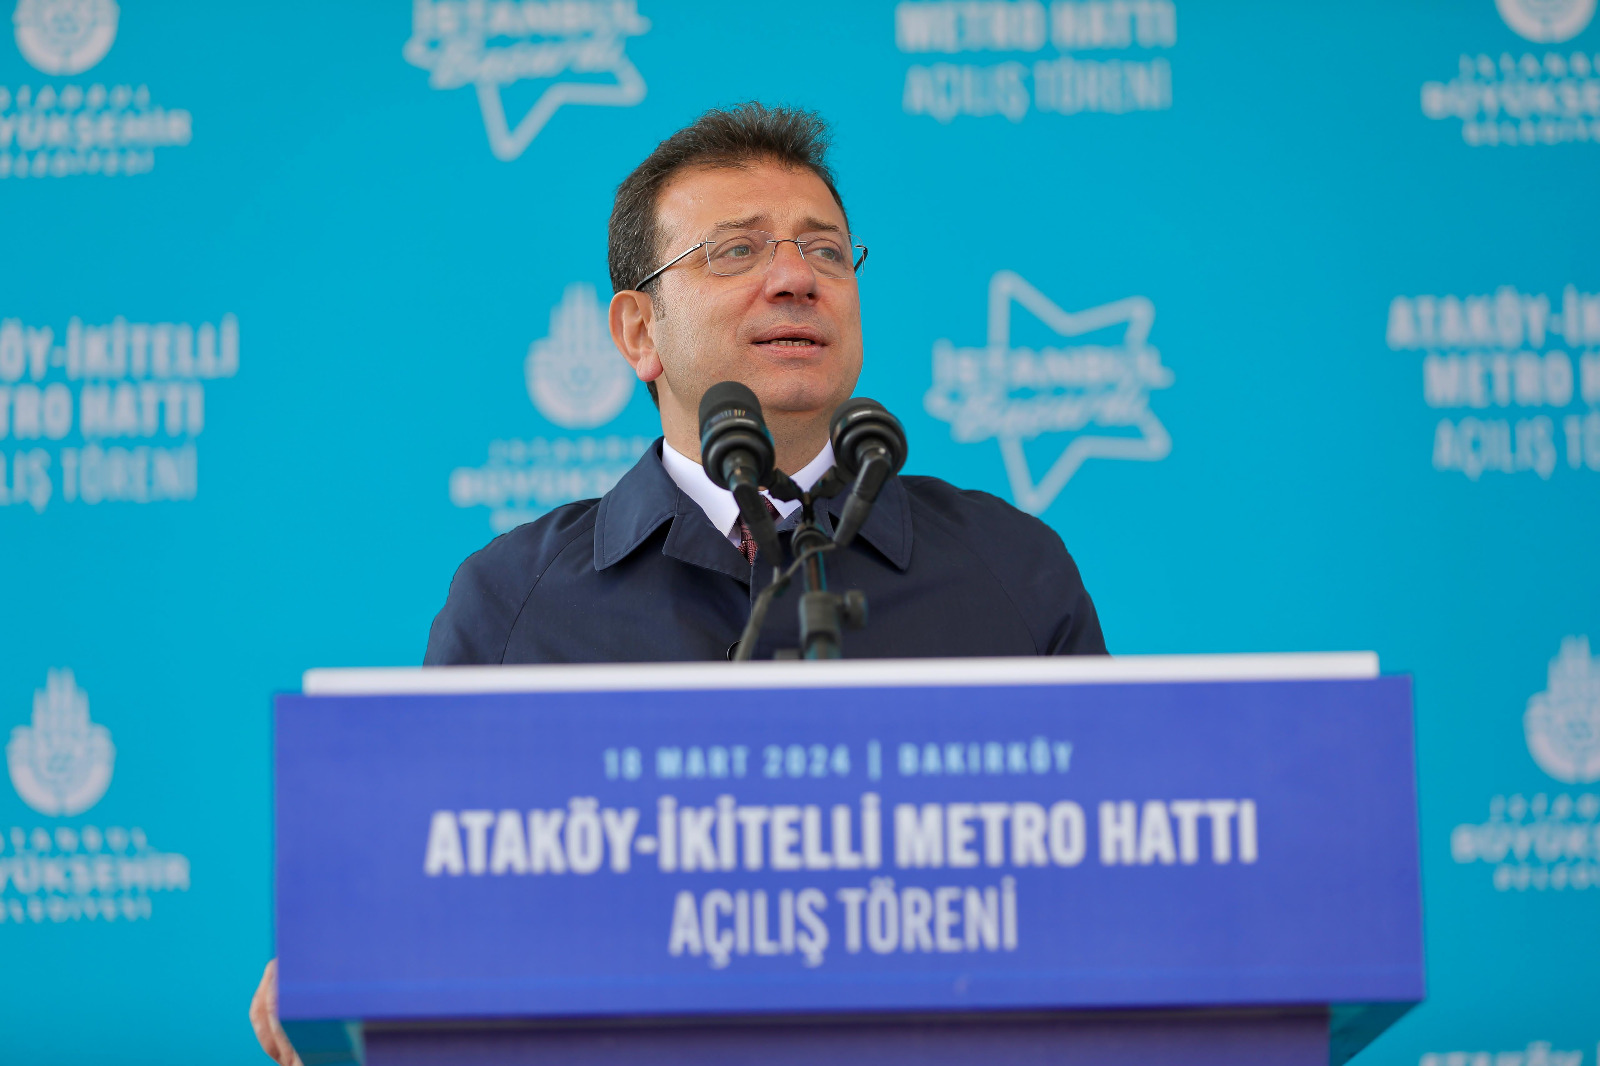 İmamoğlu: “5 yılda, 65 kilometre metro, 62 istasyonu İstanbul’a kazandırdık”